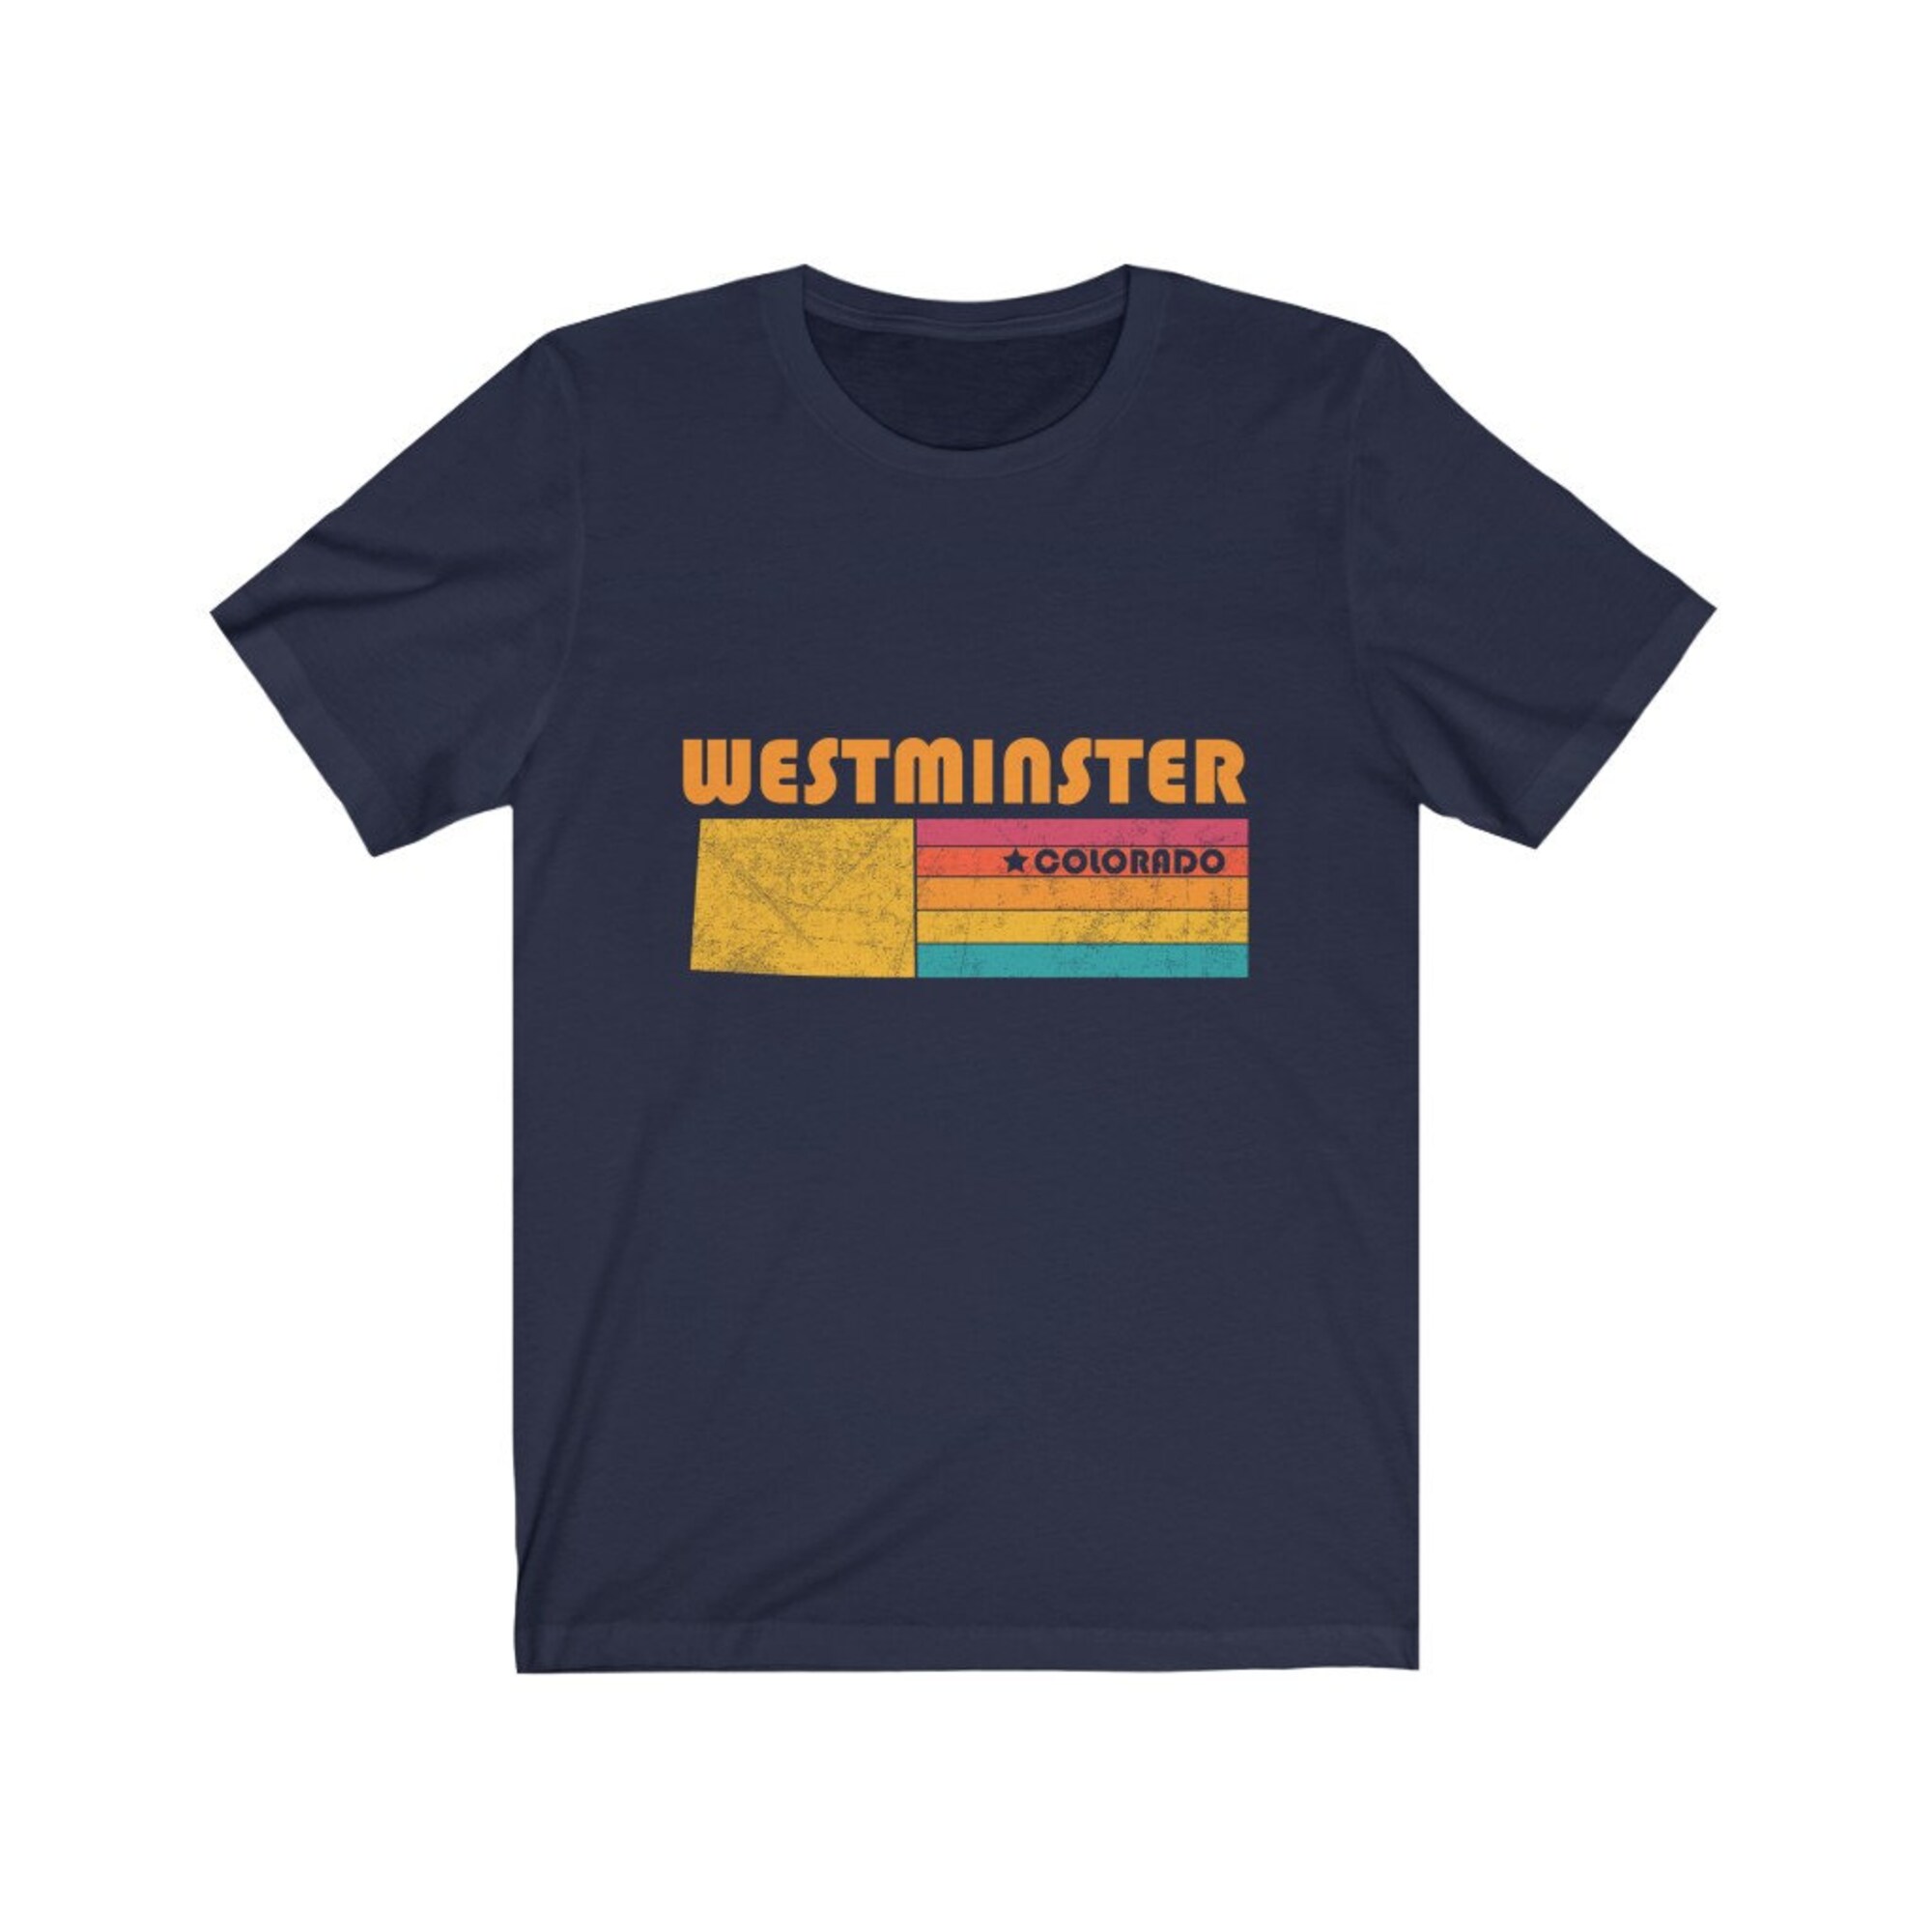 Discover Westminster Shirt Colorado Tshirts City Retro Gift Idea Tourist Tee Westminster Colorado Gift CO Westminster Souvenir Shirts